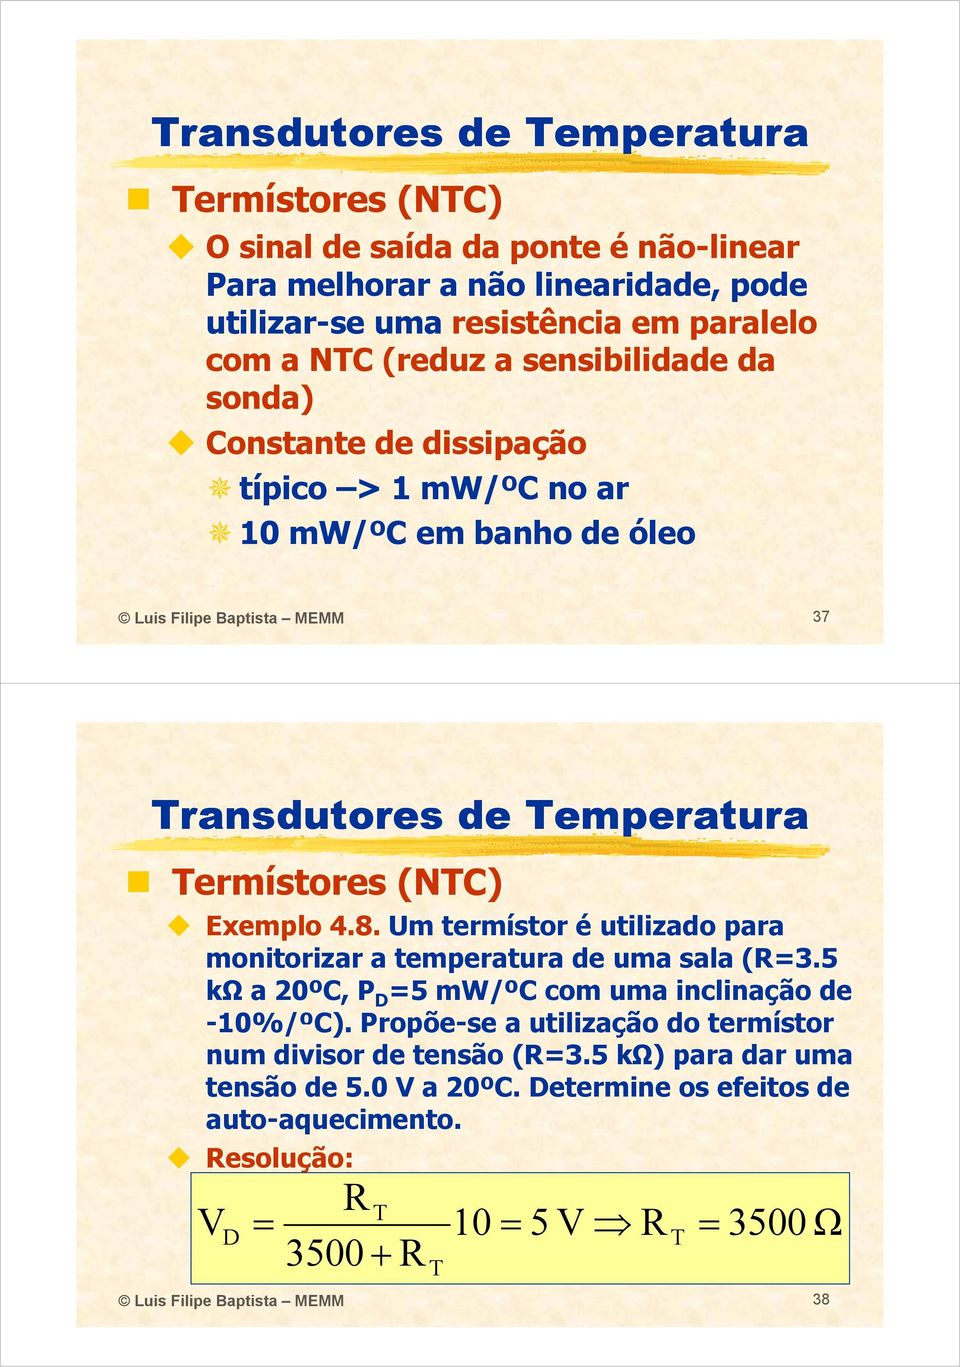 Um termístor é utilizado para monitorizar i a temperatura t de uma sala (R3.5 kω a 20ºC, P D 5 mw/ºc com uma inclinação de -10%/ºC) C).